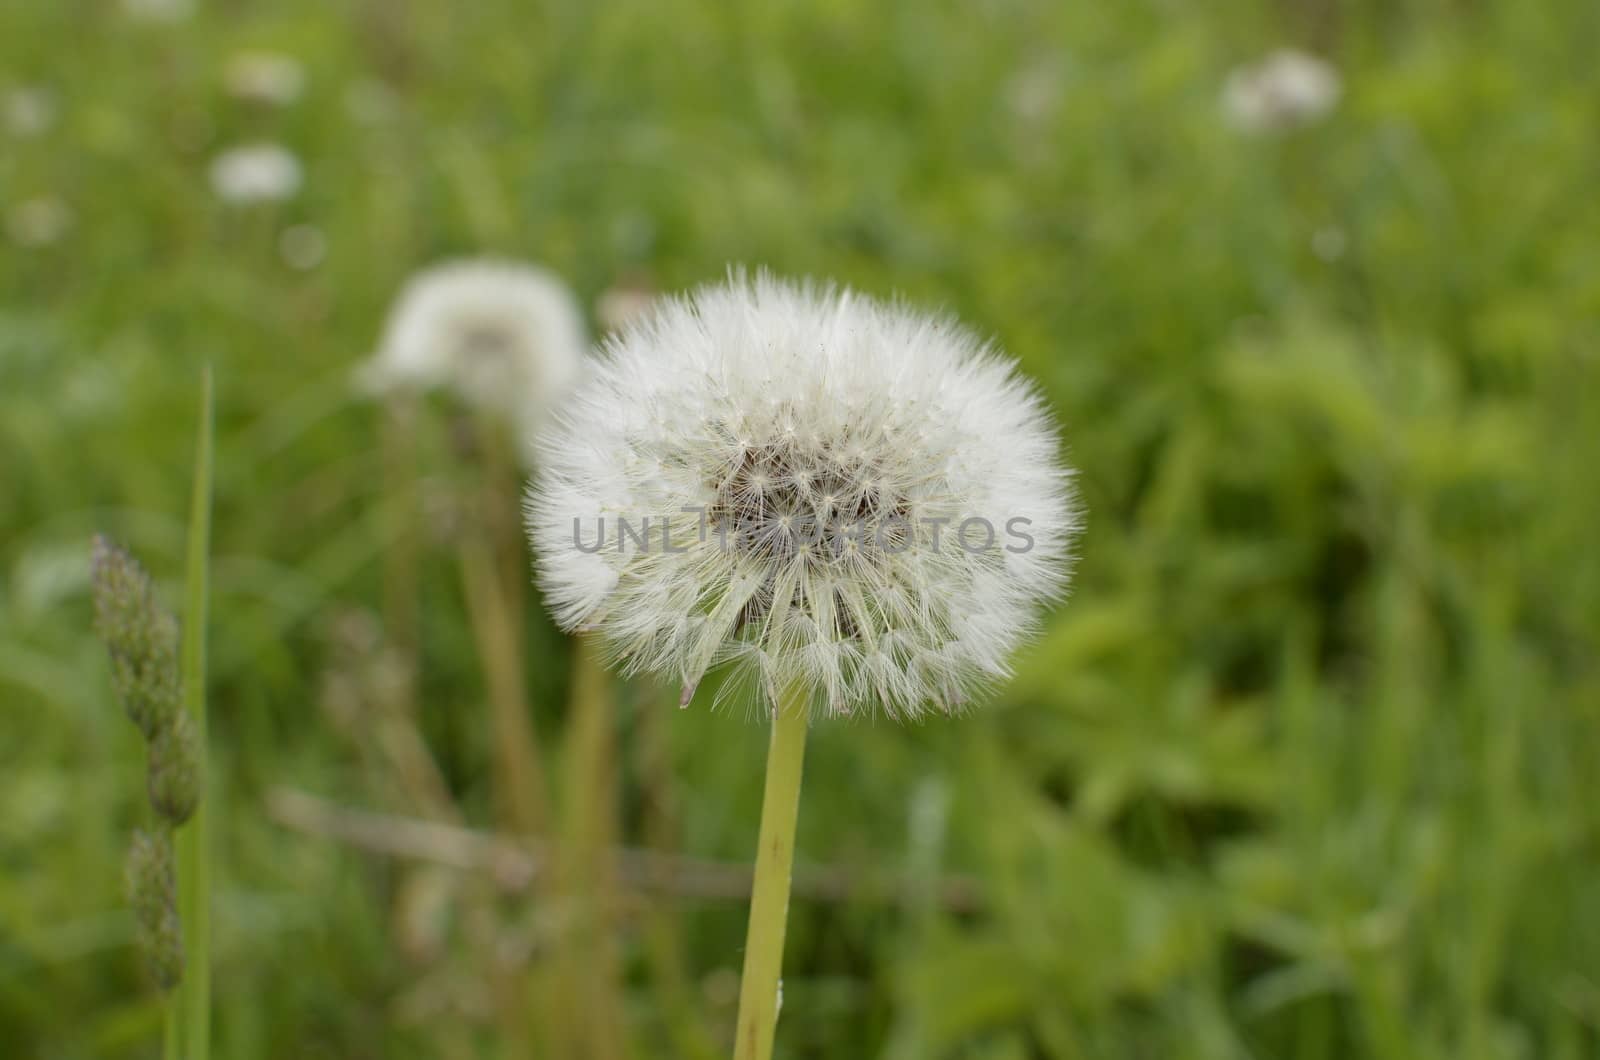 Single Dandelion on Blurred Green Meadow by fstockluk